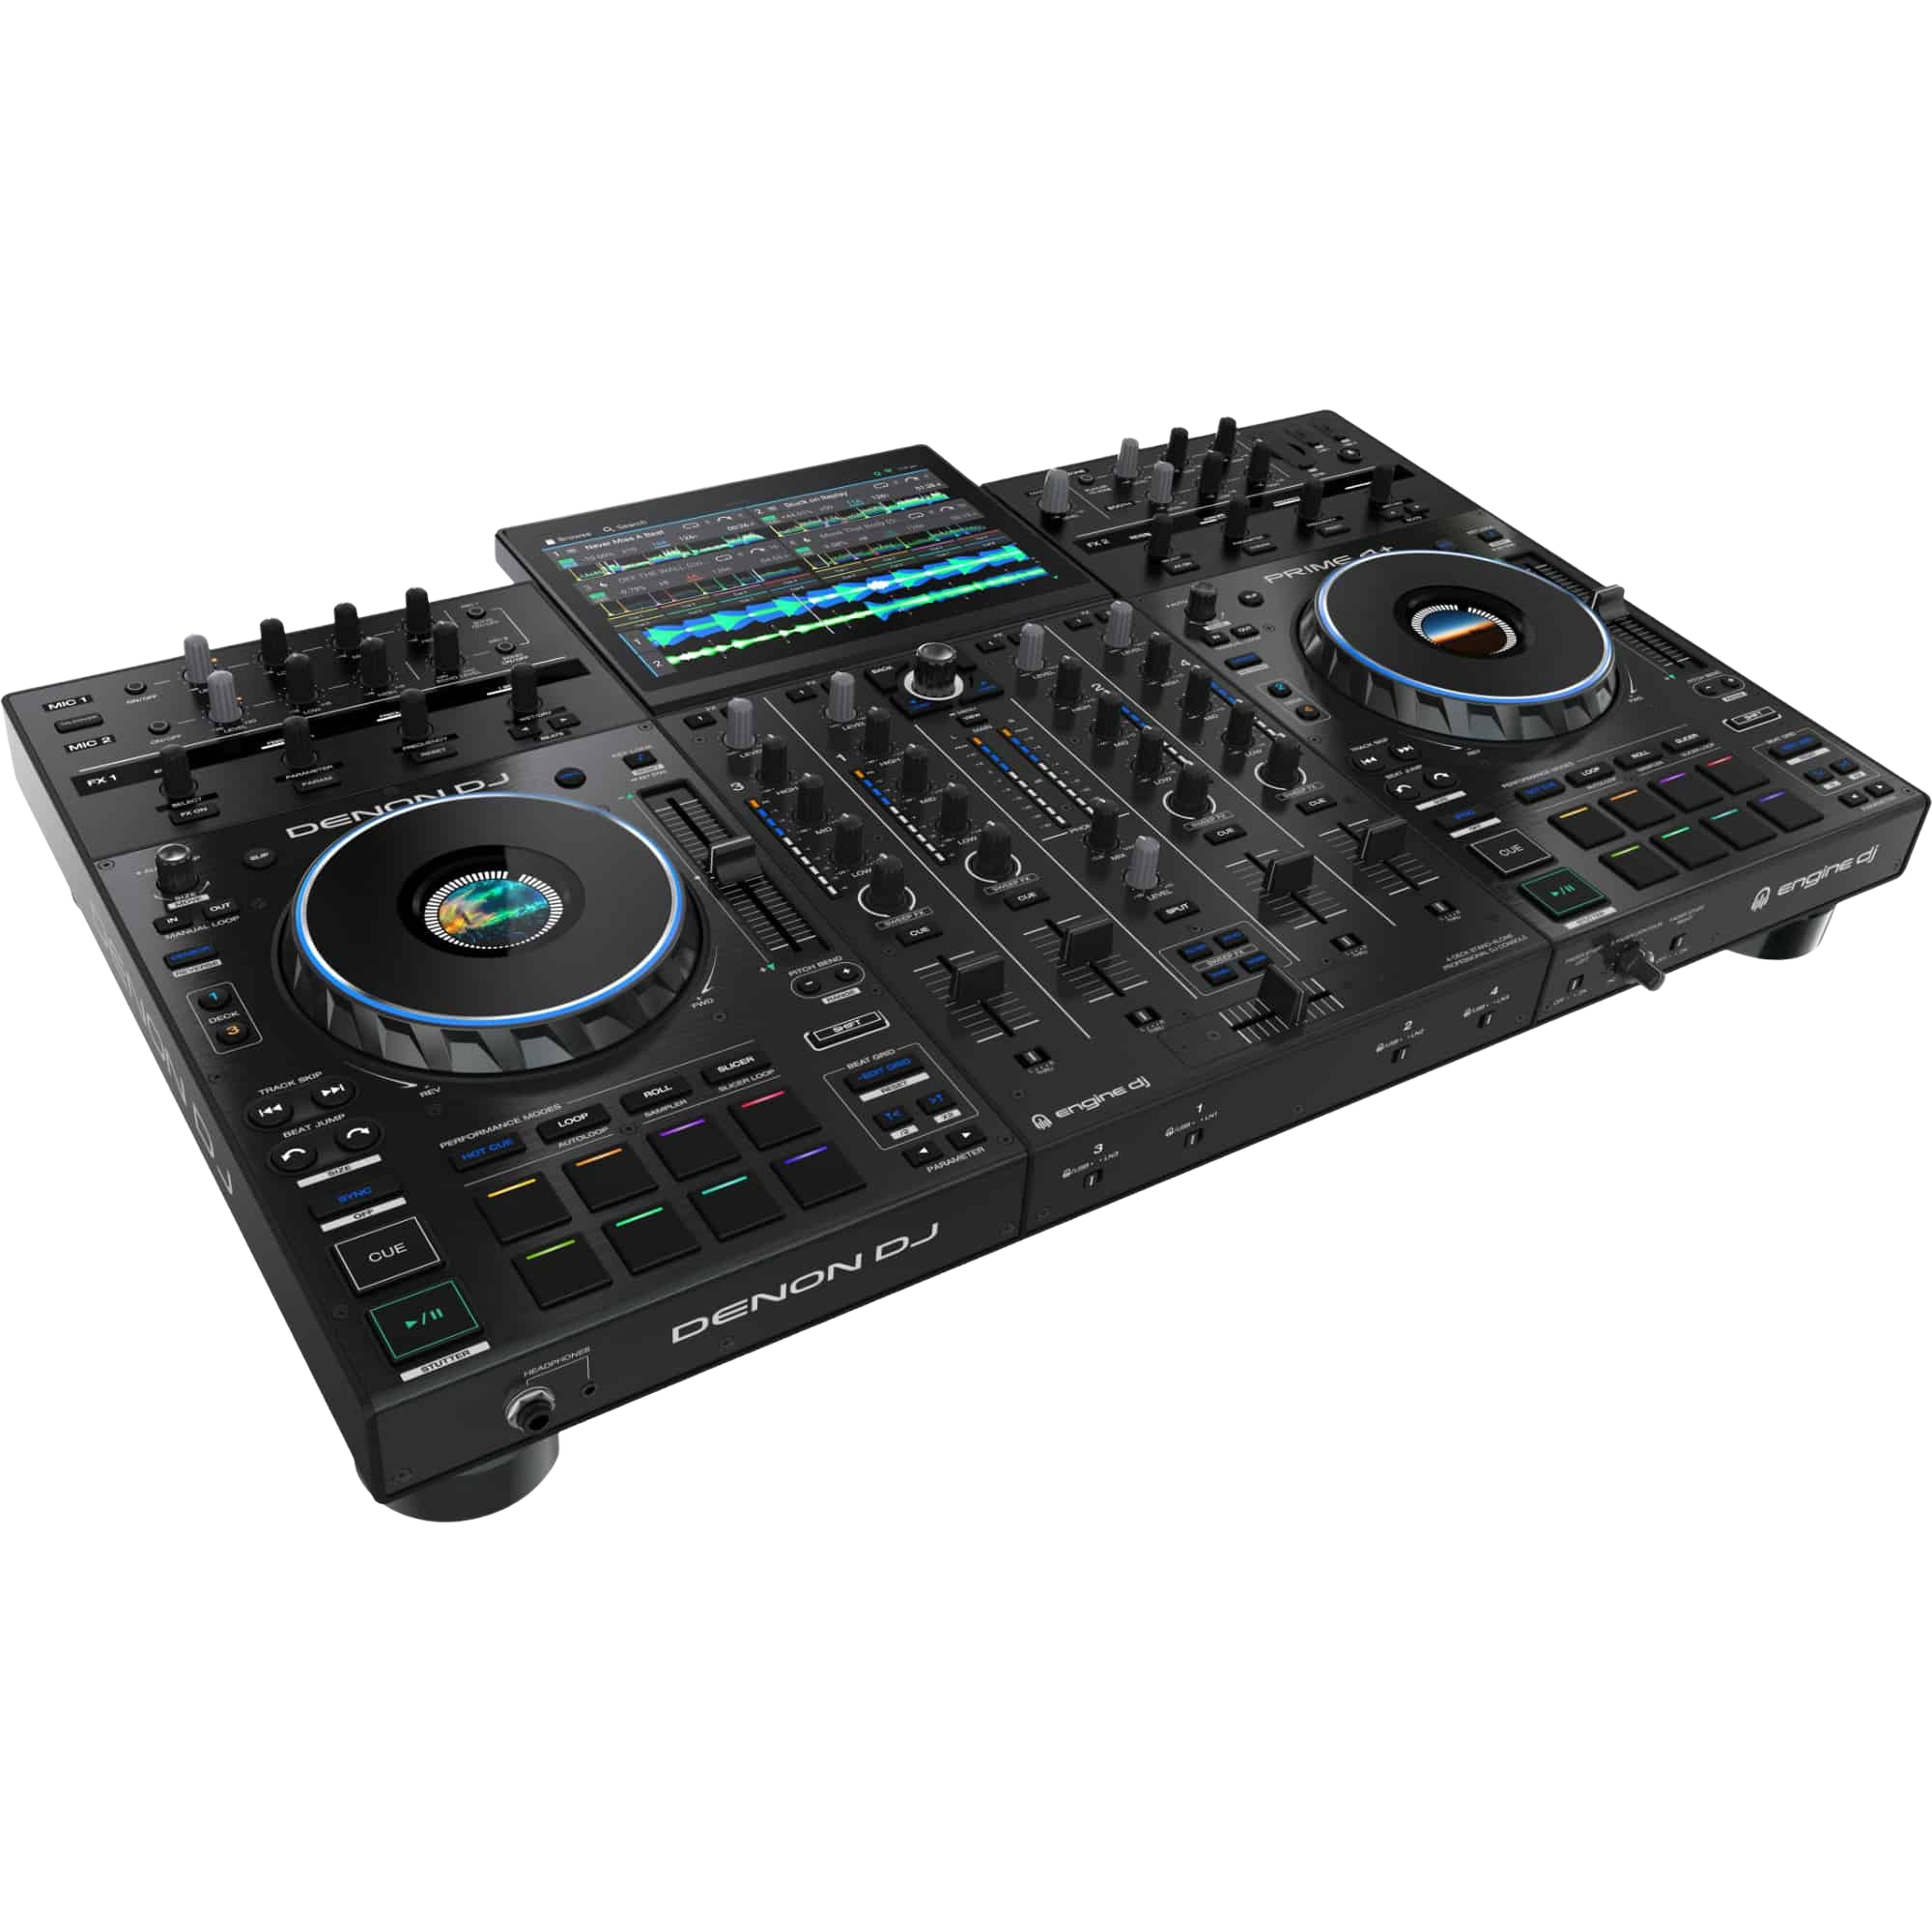 Alquila Denon Dj Prime 2 All in one DJ controller desde 59,90 € al mes